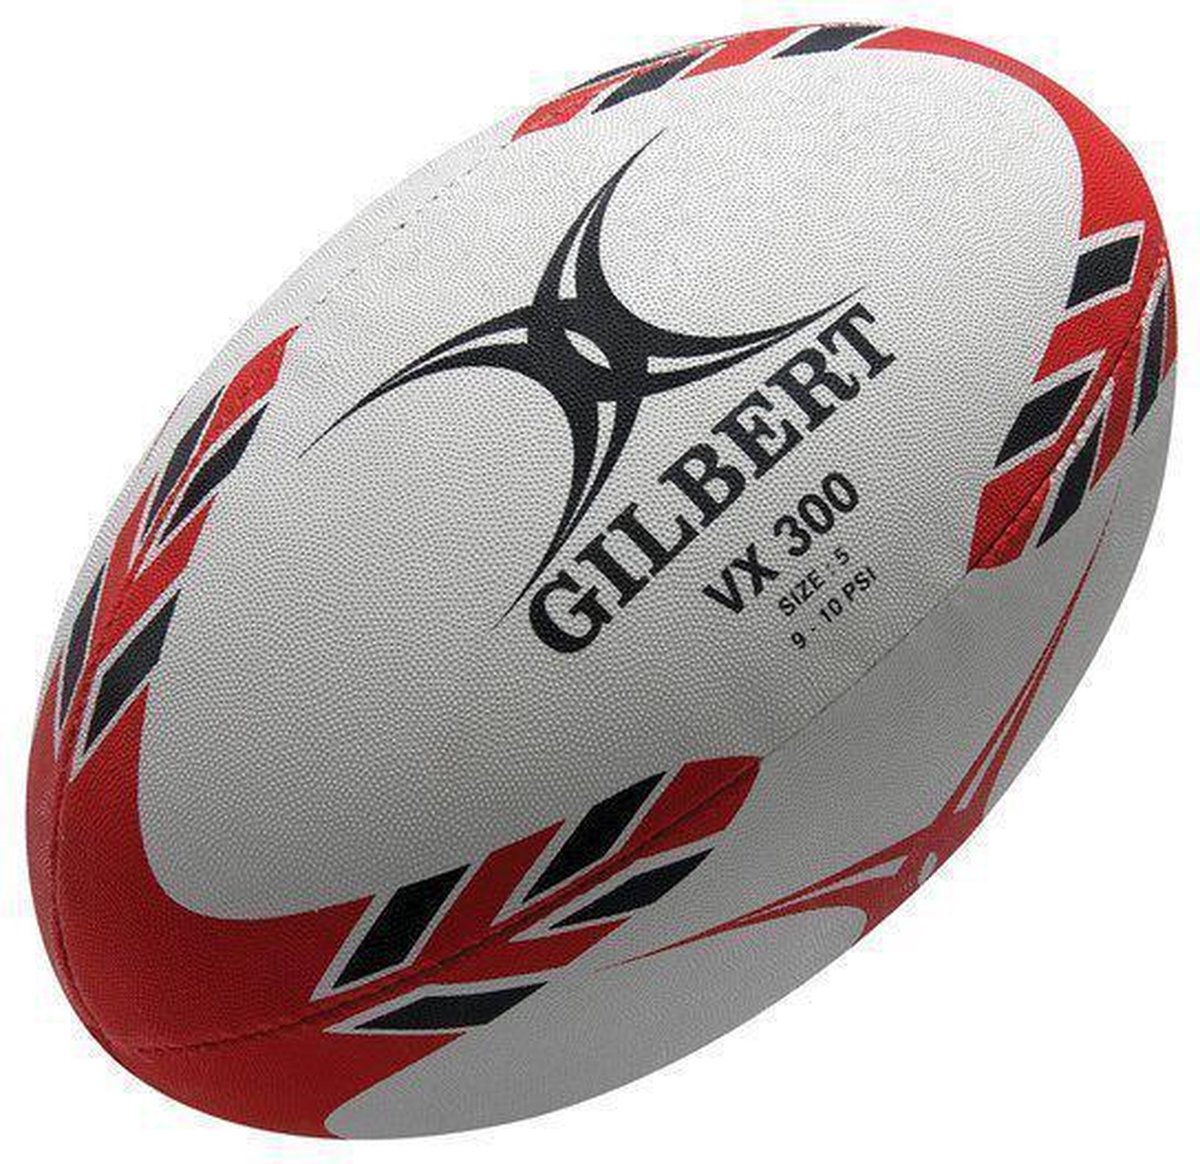 Verlaten hoe te gebruiken Worstelen Gilbert VX300 rugby ball | bol.com